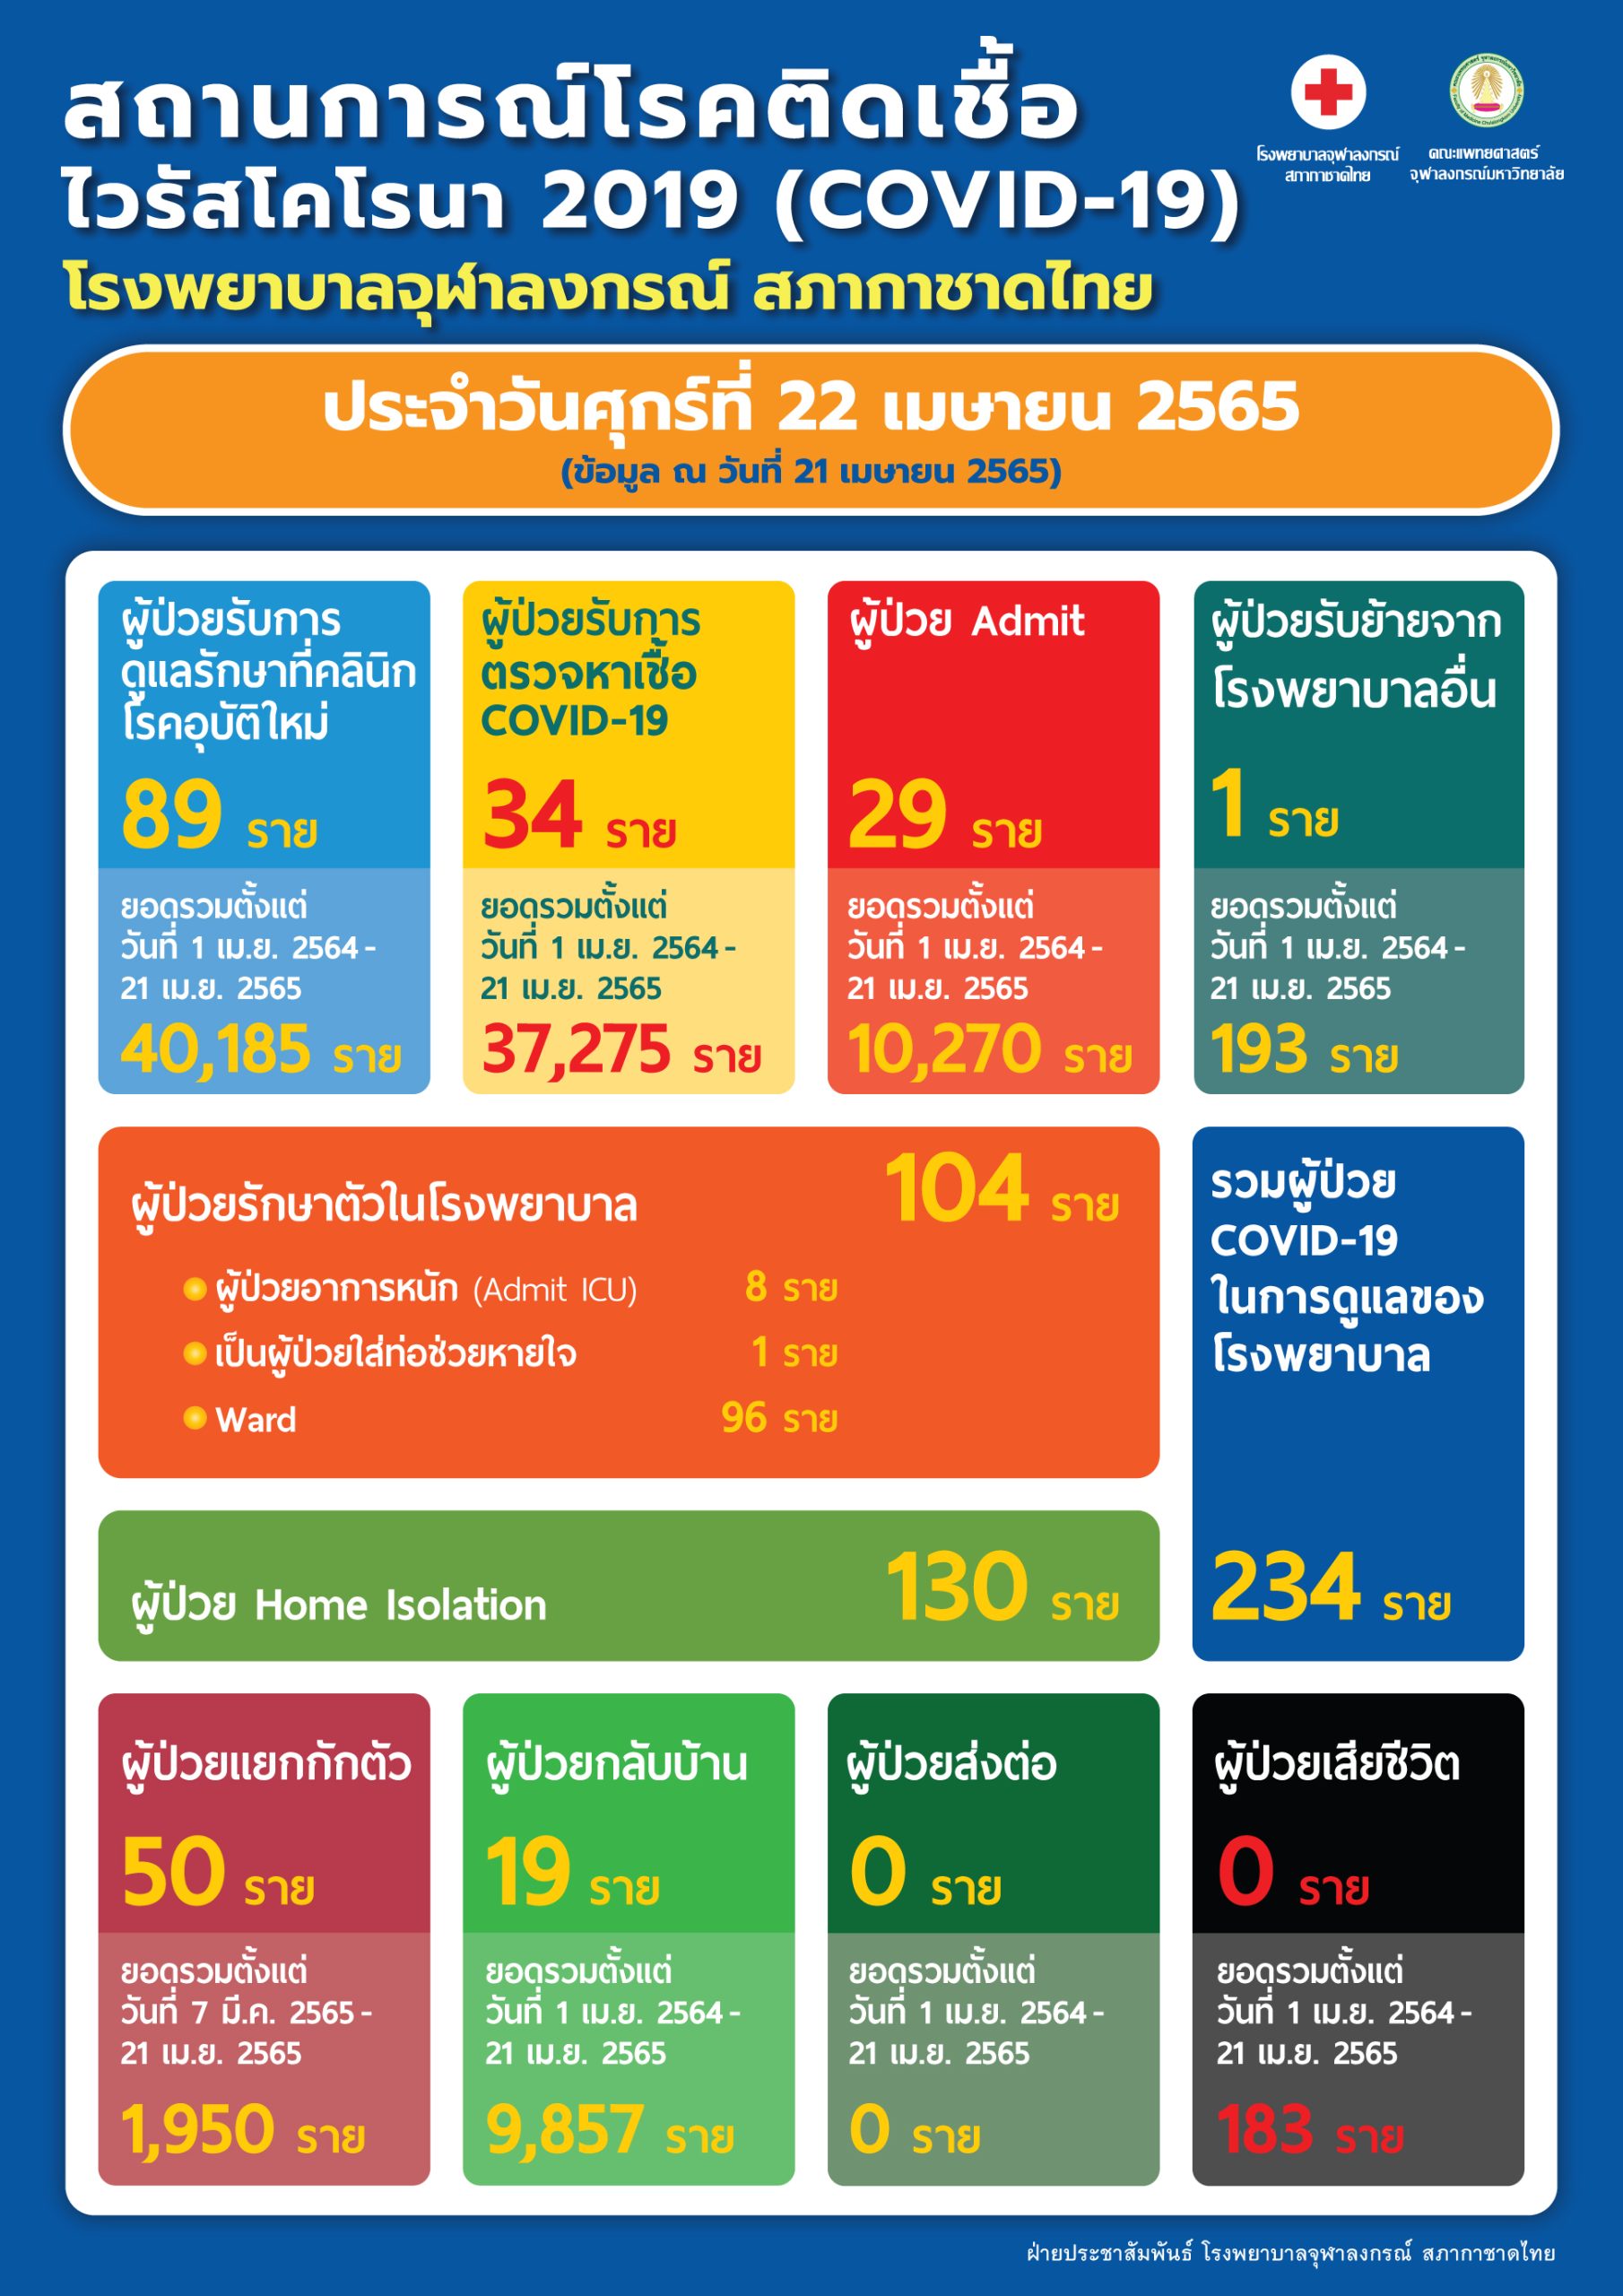 สถานการณ์โรคติดเชื้อ ไวรัสโคโรนา 2019 (COVID-19) โรงพยาบาลจุฬาลงกรณ์ สภากาชาดไทย ประจำวันศุกร์ที่ 22 เมษายน 2565